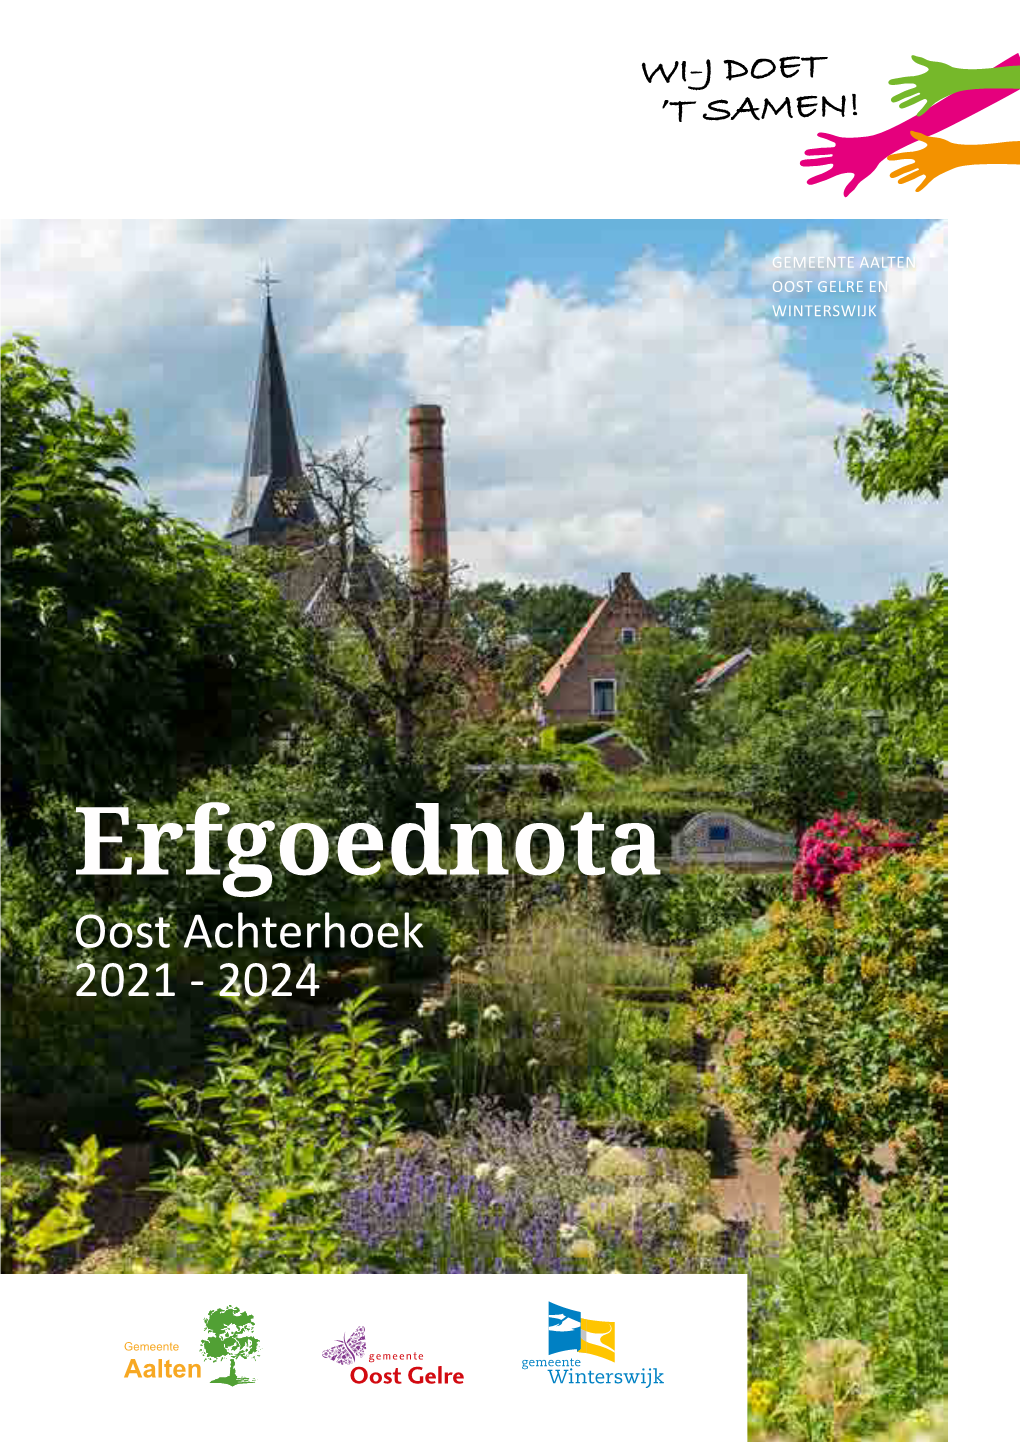 Download Erfgoednota 2021-2024 Oost Achterhoek